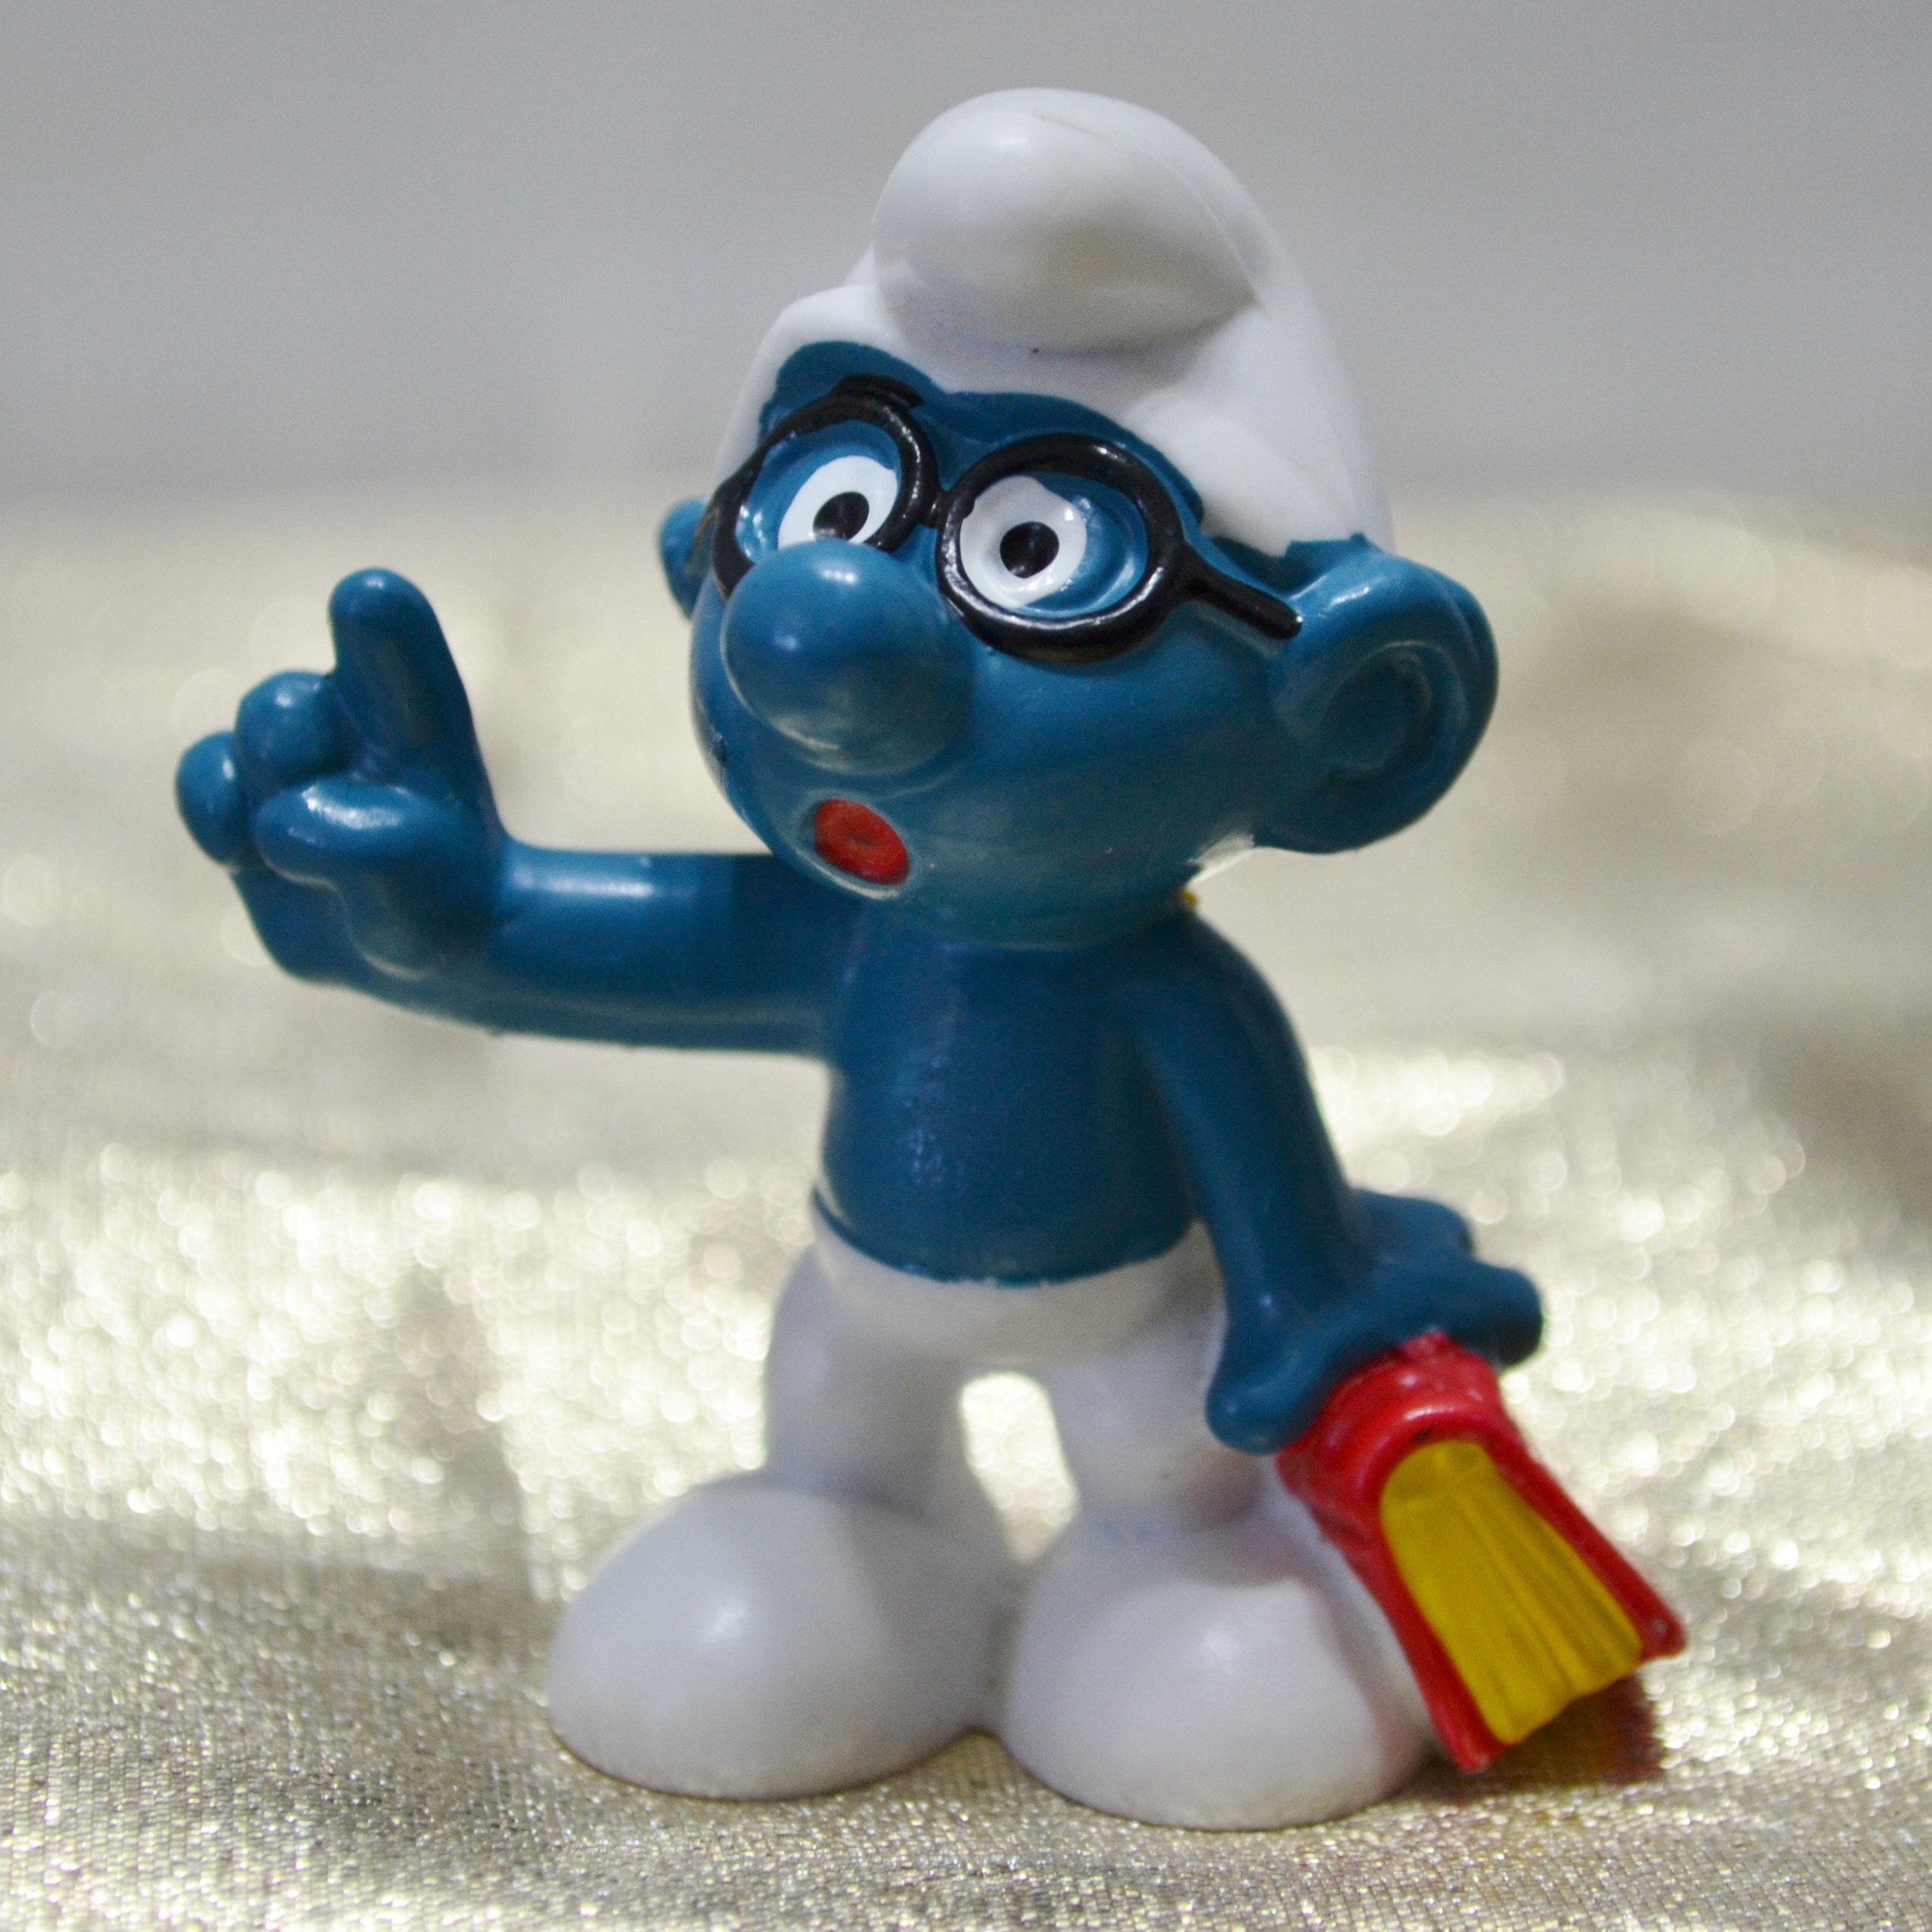 Smurfs 20129 Baseball Player Smurf Batter 1980s Vintage Figure Toy PVC Figurine for sale online 